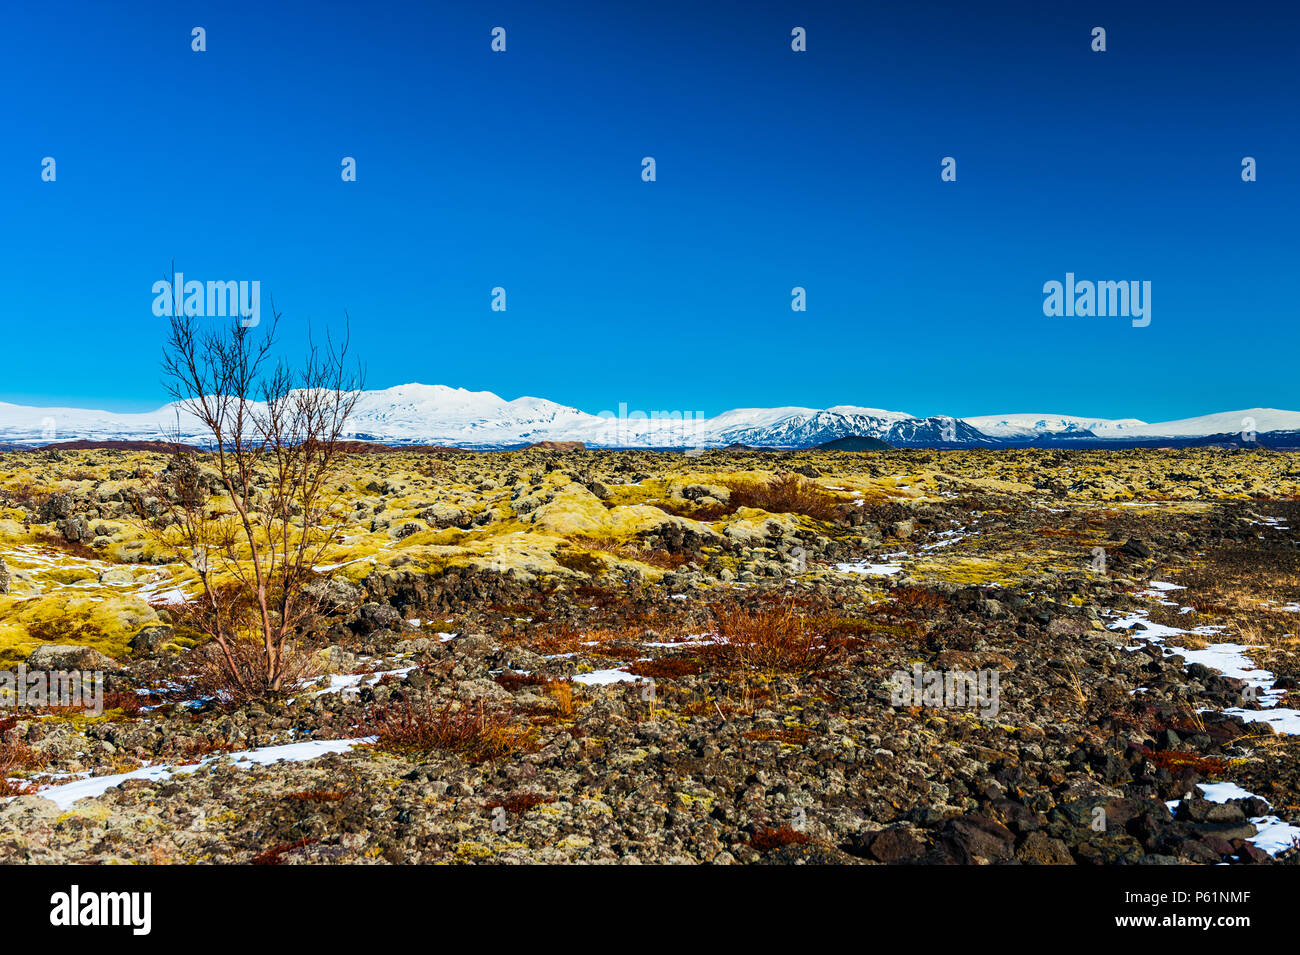 Impressione di icelands desoltae paesaggio in thingvellir parco nazionale intorno al lago thingvallavatn coevred contrasty in colori vivaci, aprile 2018 Foto Stock